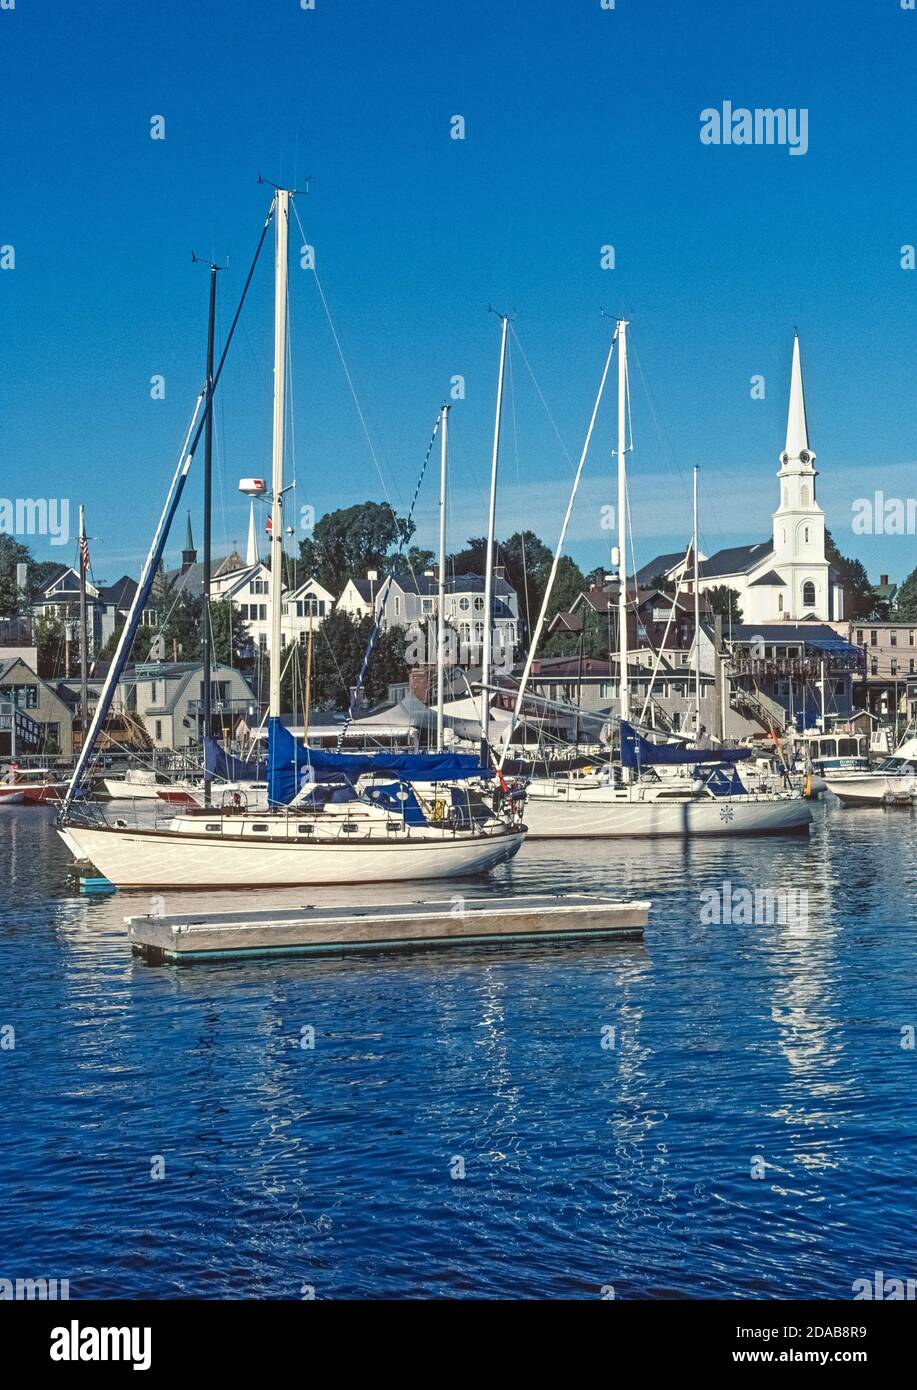 El encantador puerto costero de Camden, Maine, EE.UU., es la icónica ciudad de Nueva Inglaterra con su iglesia de color blanco y un puerto lleno de veleros modernos y clásicos. Estos incluyen goletas históricas que ofrecen viajes en velero en la Bahía de Penobscot y a lo largo de las costas del noreste en el Océano Atlántico. Foto de stock